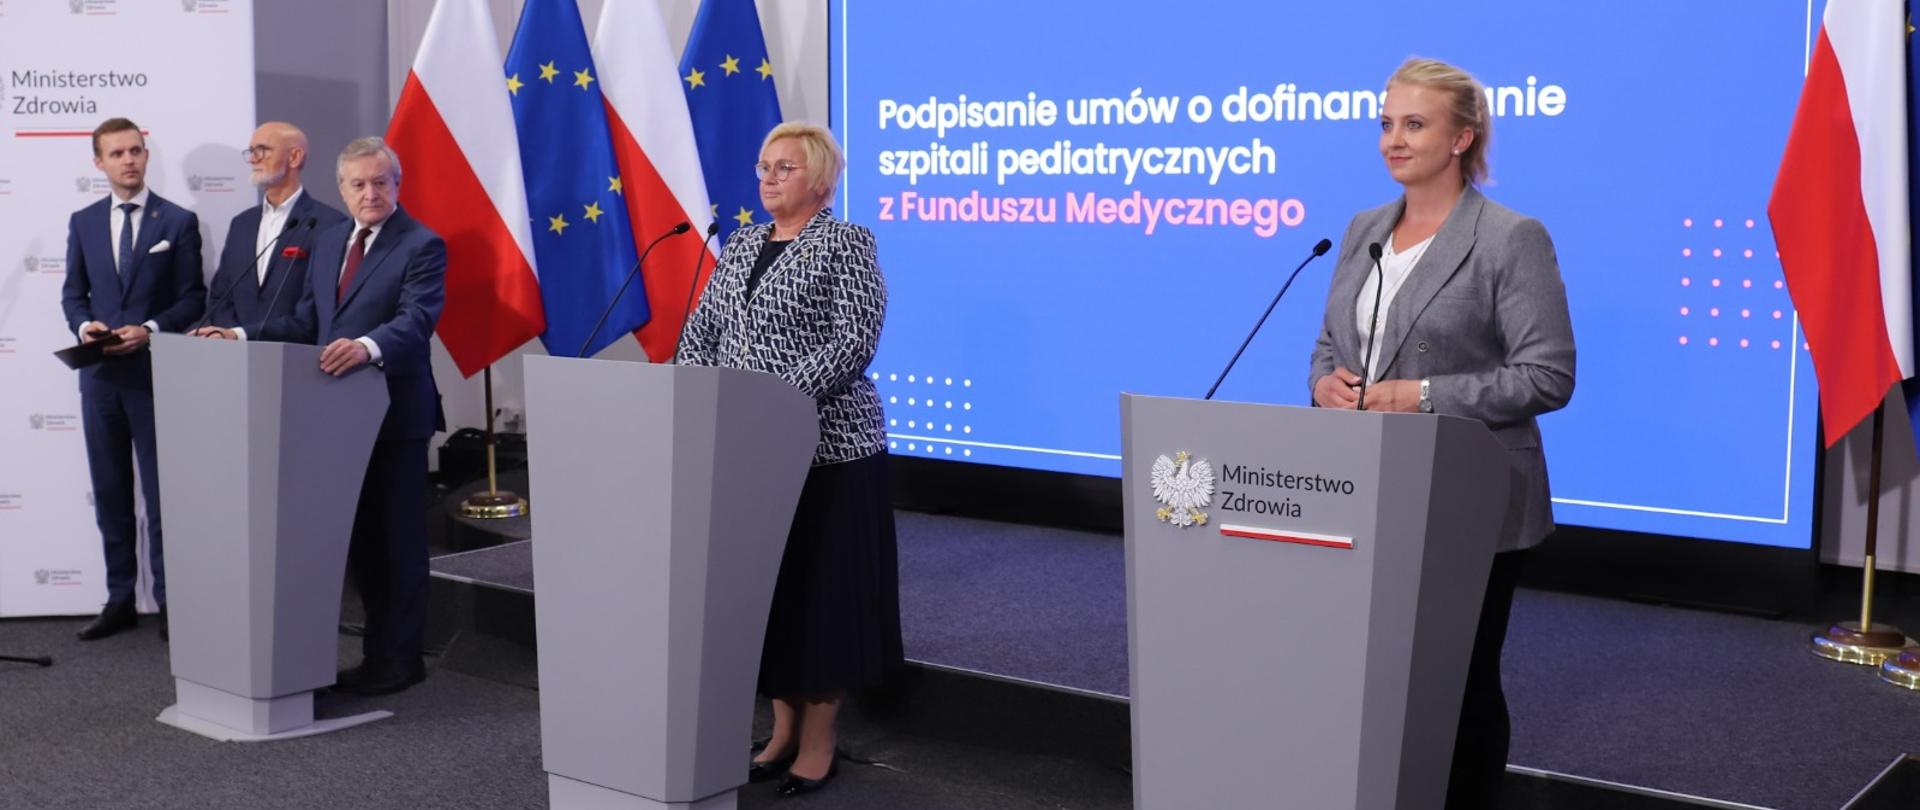 Minister zdrowia Katarzyna Sójka i wiceminister Marcin Martyniak podczas briefingu prasowego dotyczącego rekordowych środków na dofinansowanie szpitali pediatrycznych w ramach Funduszu Medycznego. 